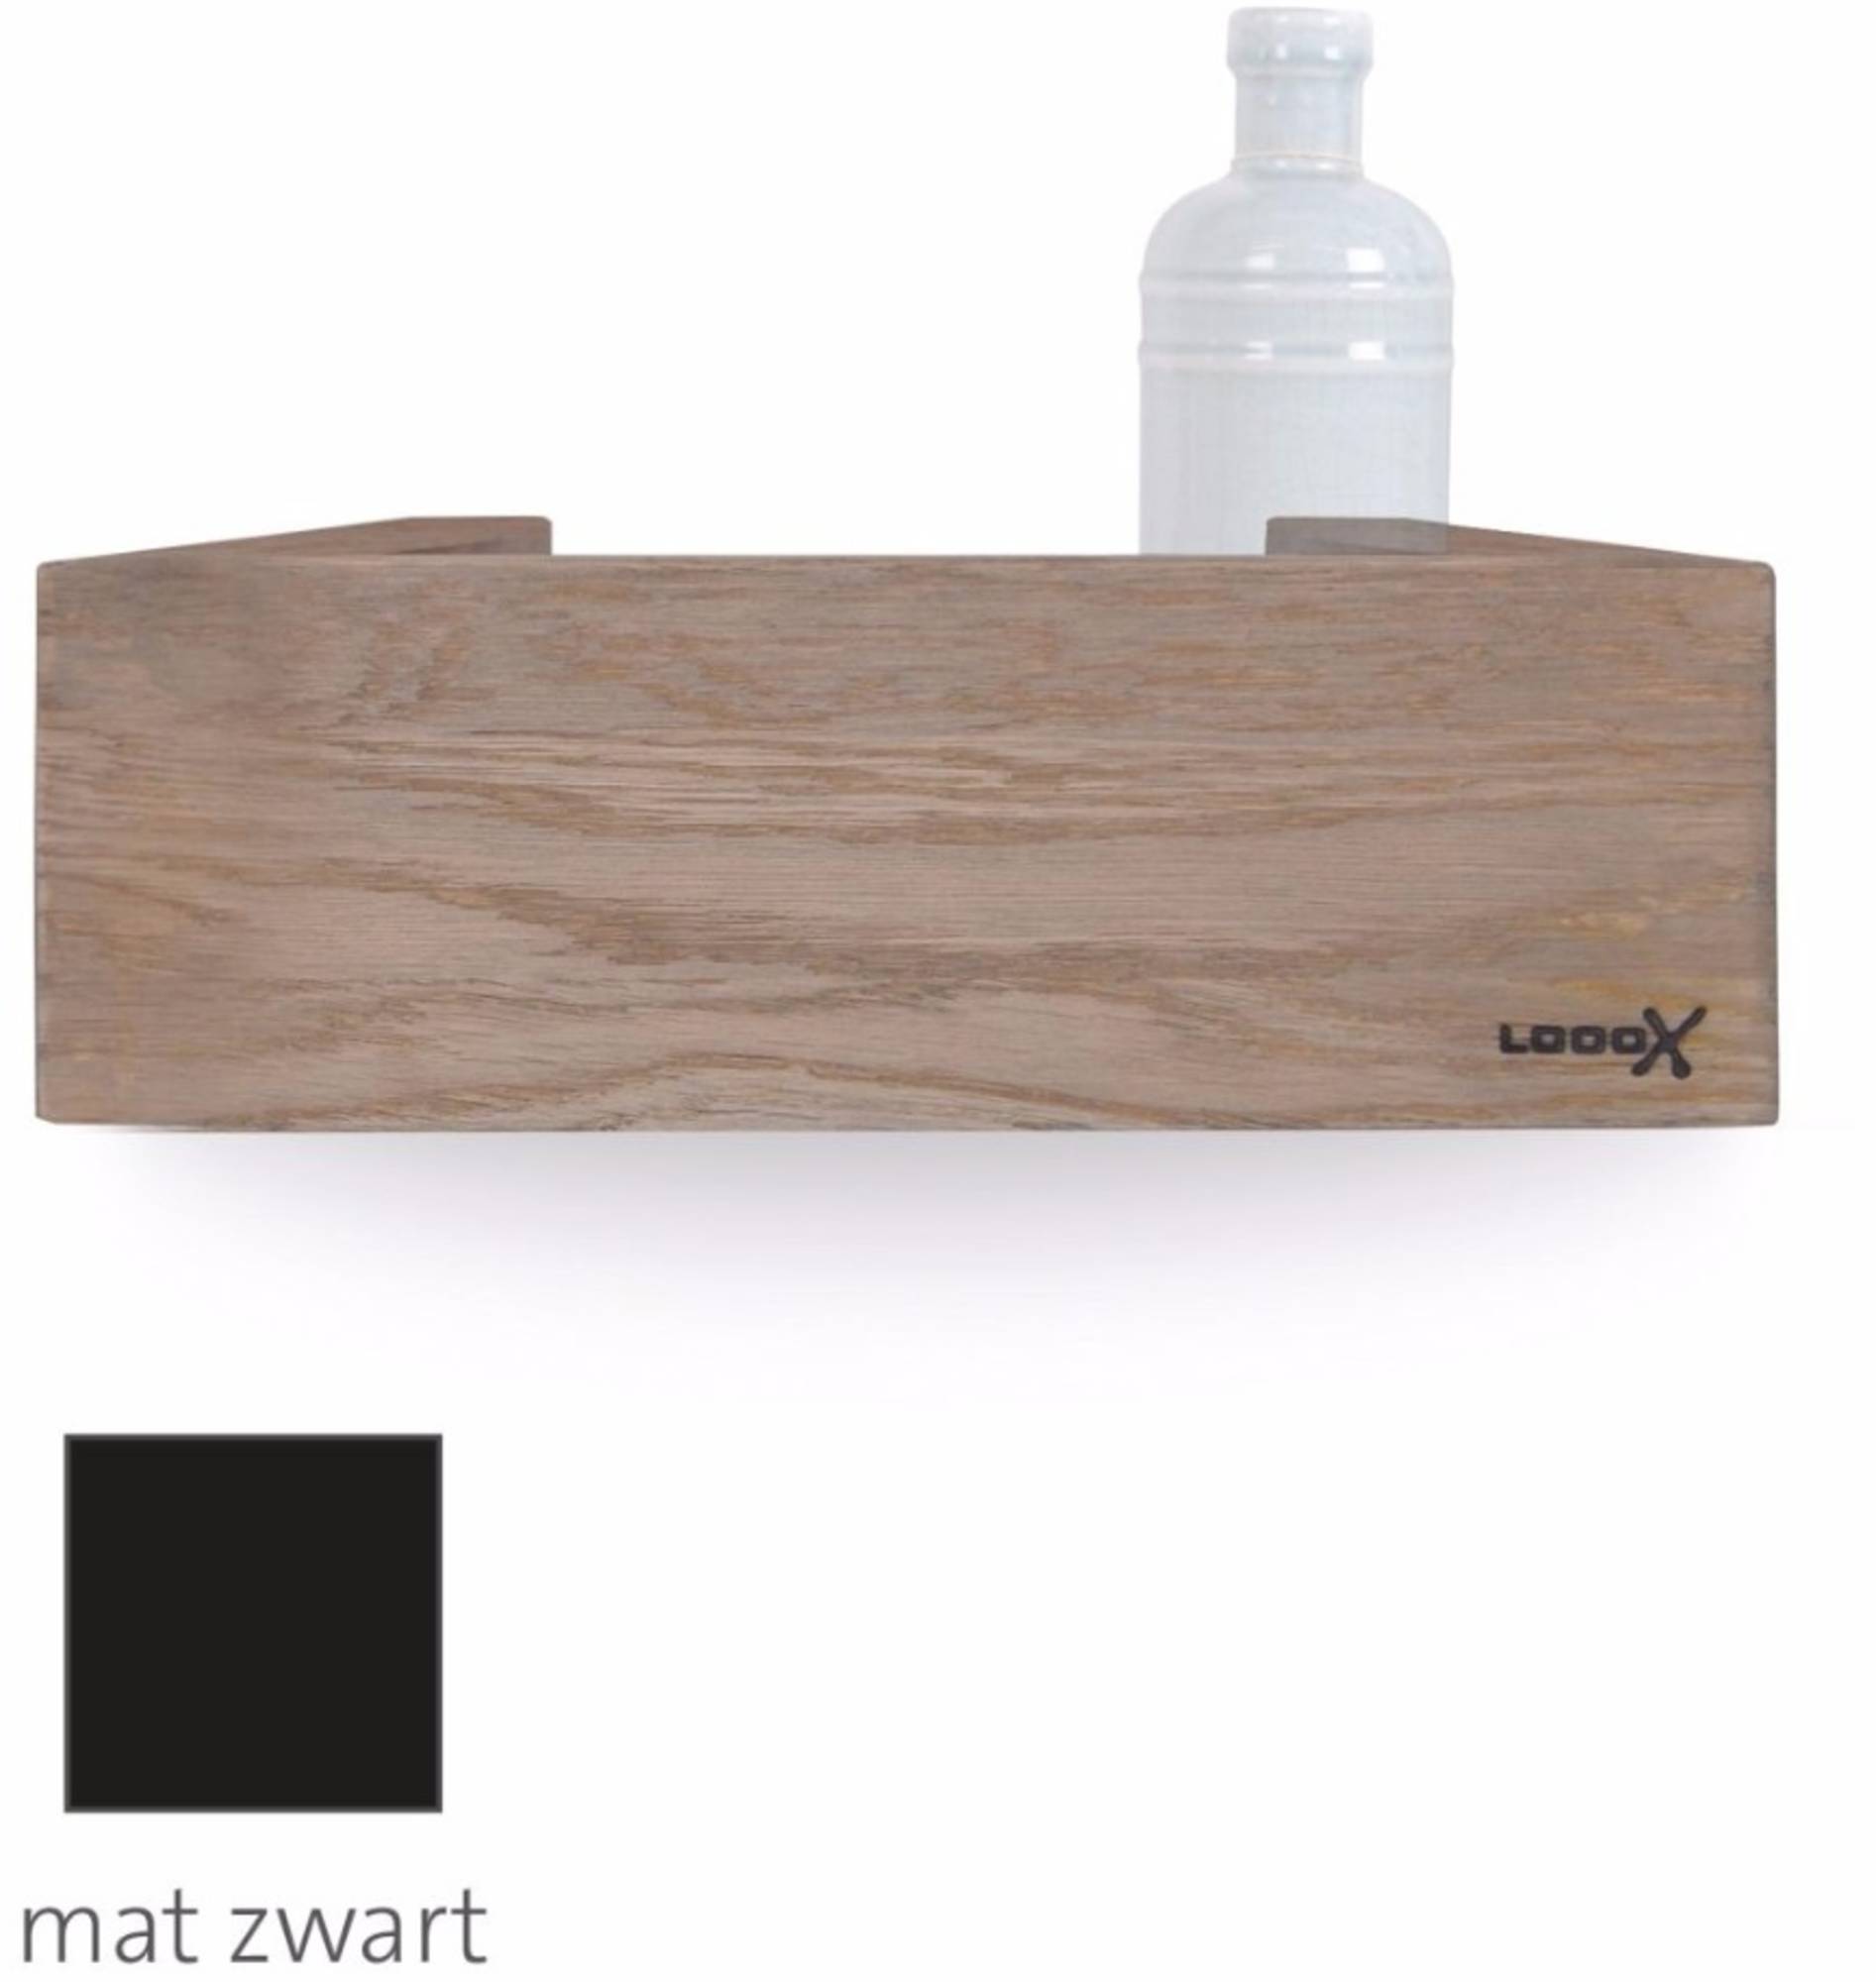 Looox Wooden Shelf Wasbox 30x10x9,8 cm Old Grey/Mat Zwart